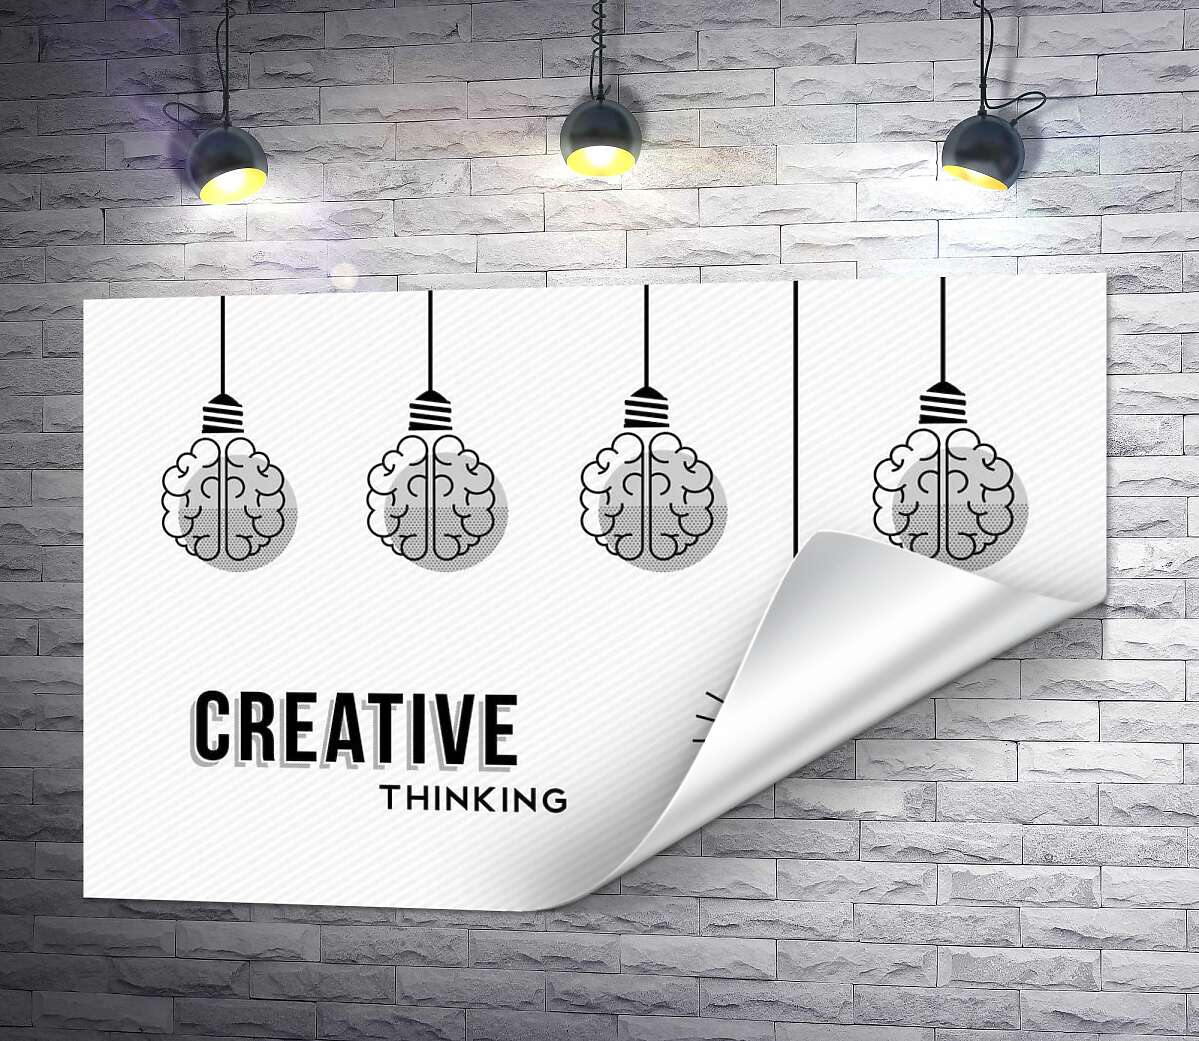 друк Гірлянда із лампочок над фразою "creative thinking"